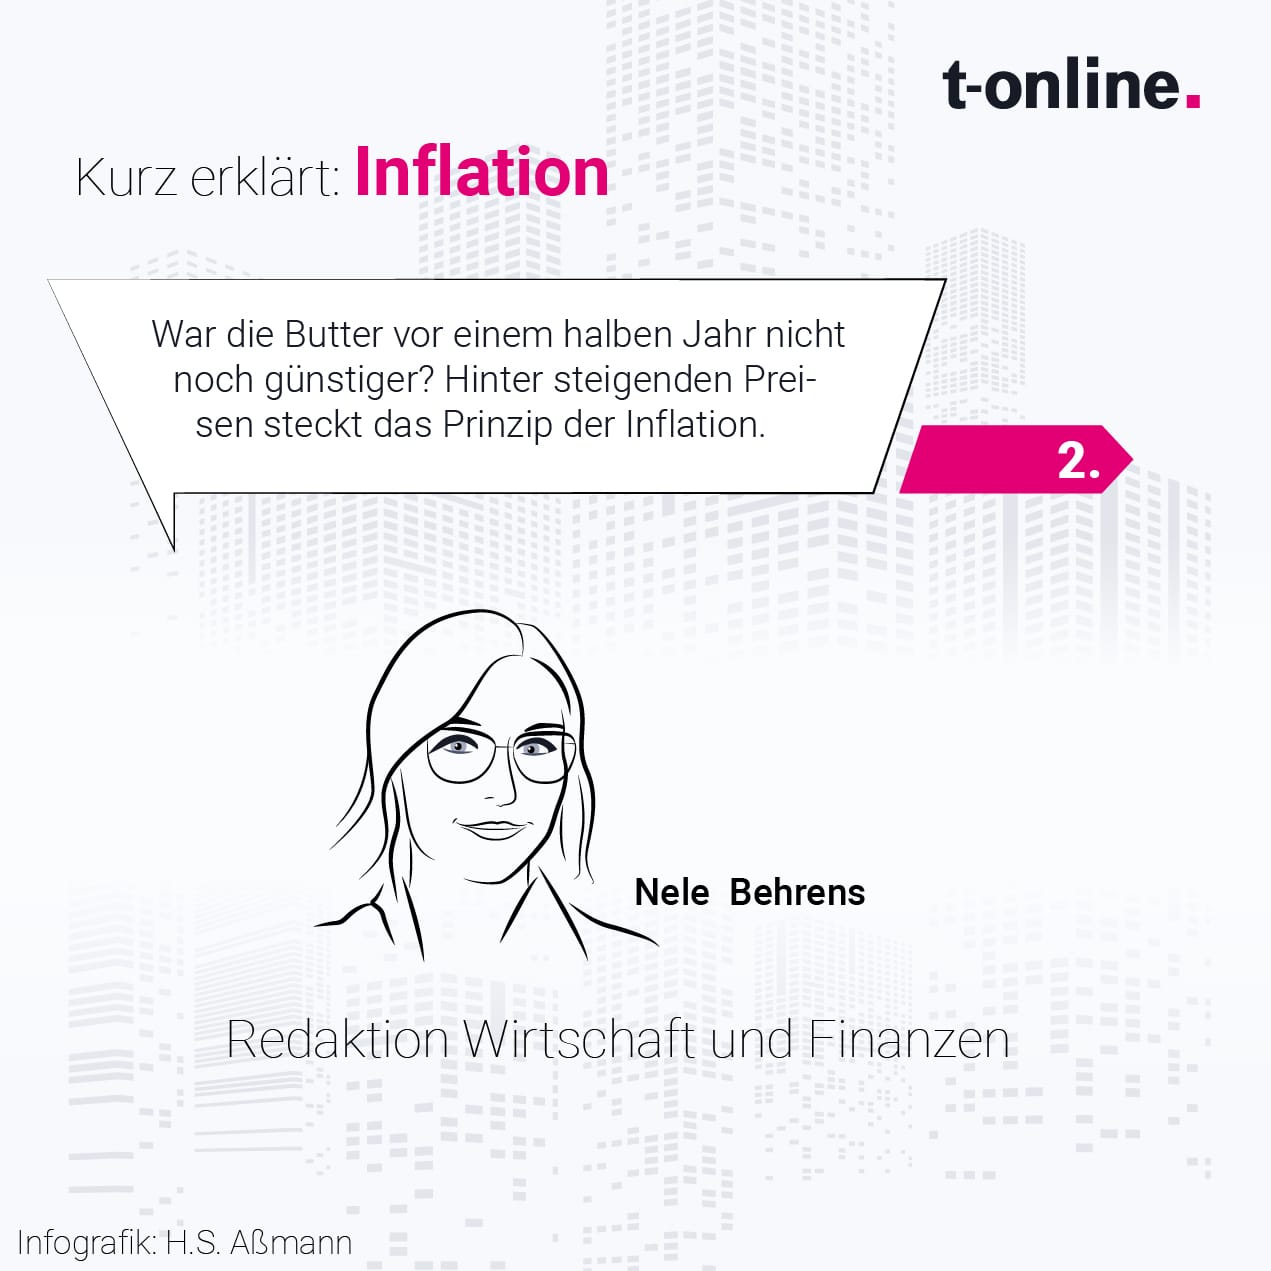 Die Redaktion Wirtschaft und Finanzen erklärt in fünf Bildern die Inflation und wie diese sich auf Verbraucher auswirkt.